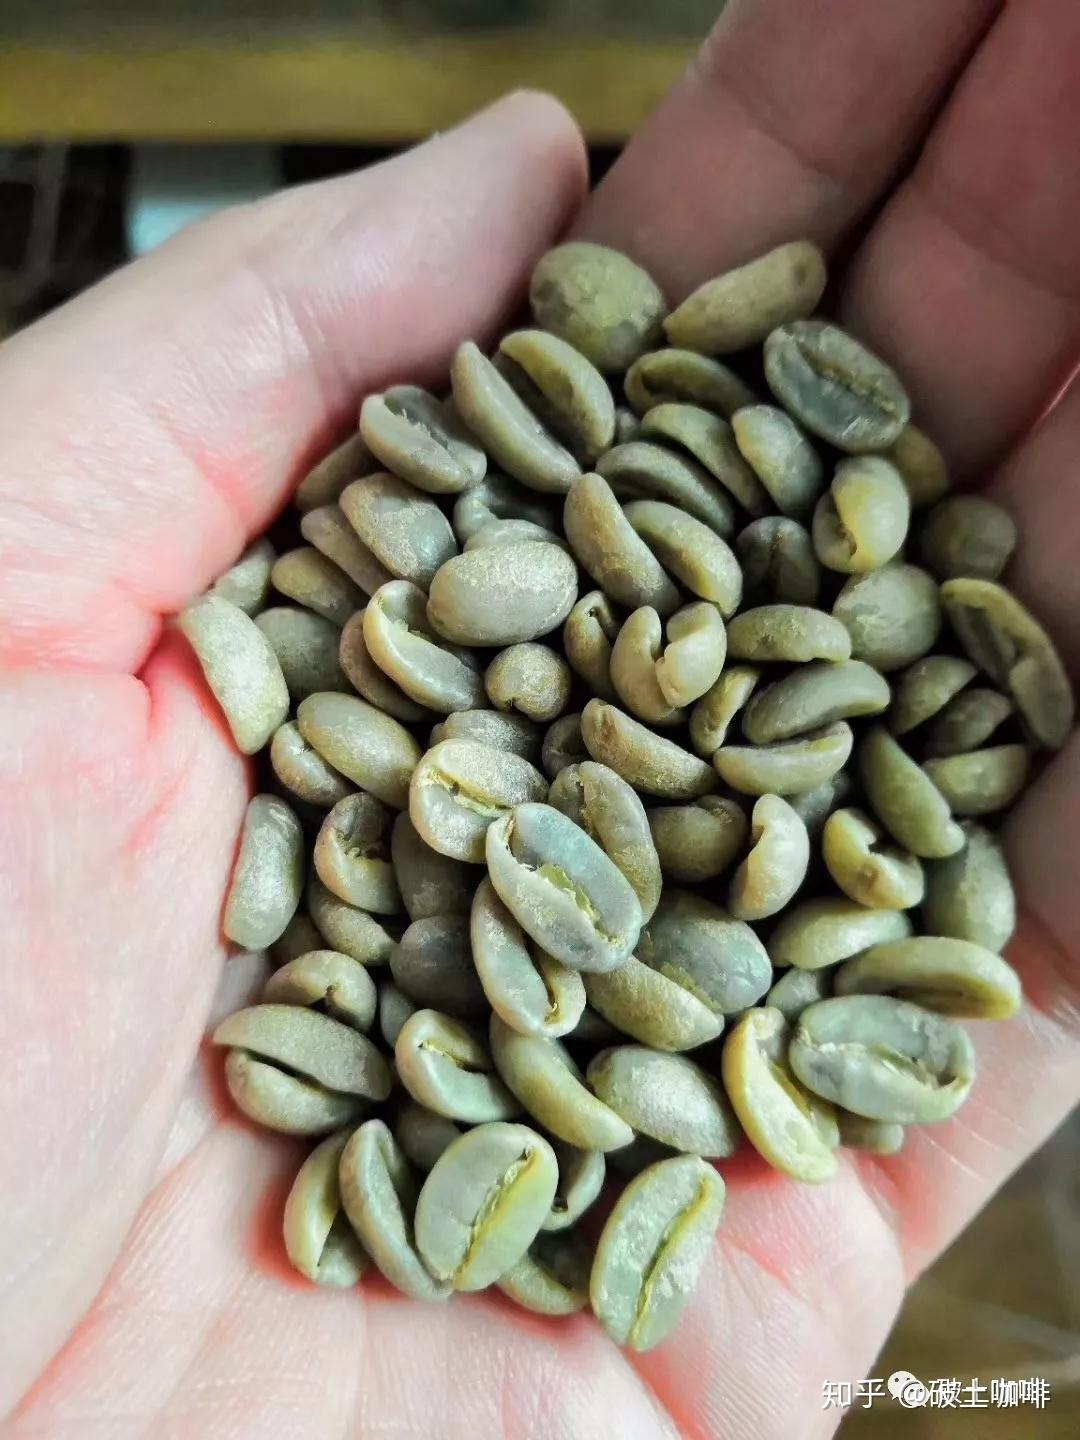 咖啡知识之从咖啡生豆到深豆的变化 | EHS咖啡西点培训学院